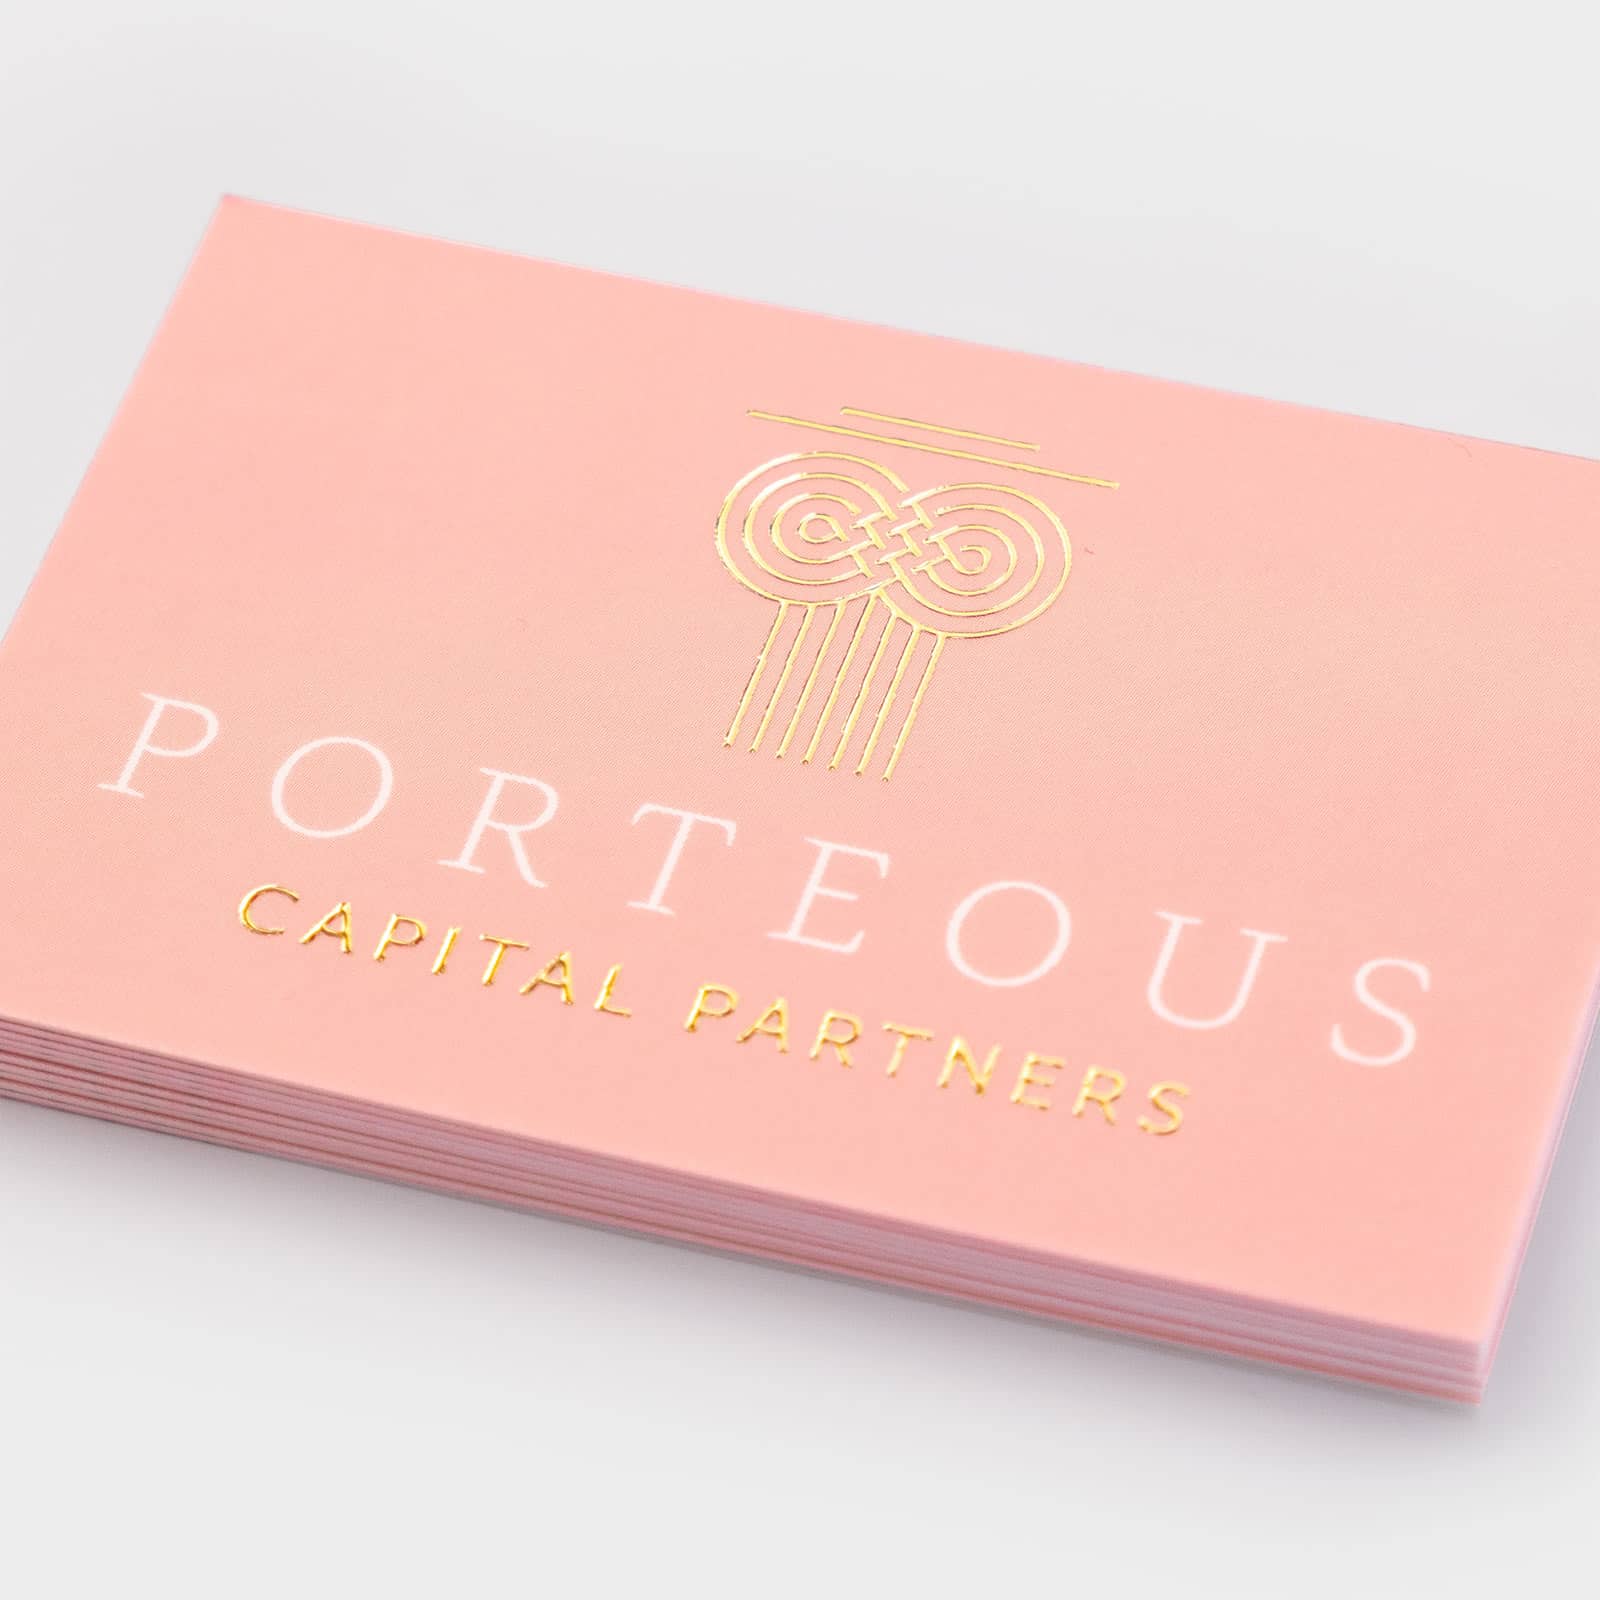 Porteous Capital Gold Foil Business Card